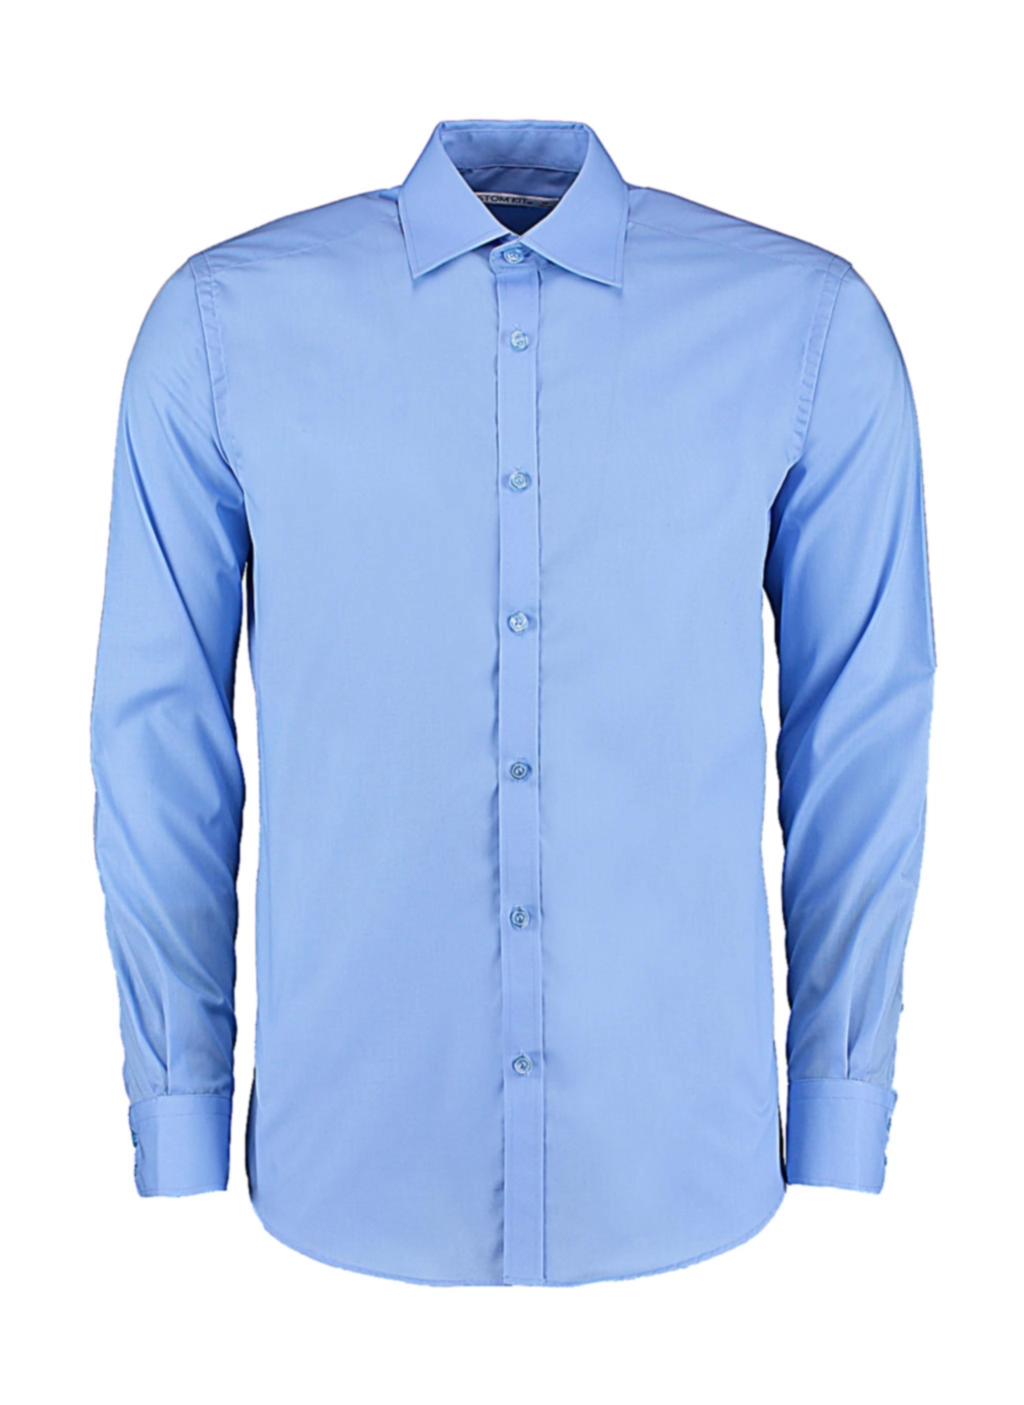 Slim Fit Business Shirt LS zum Besticken und Bedrucken in der Farbe Light Blue mit Ihren Logo, Schriftzug oder Motiv.